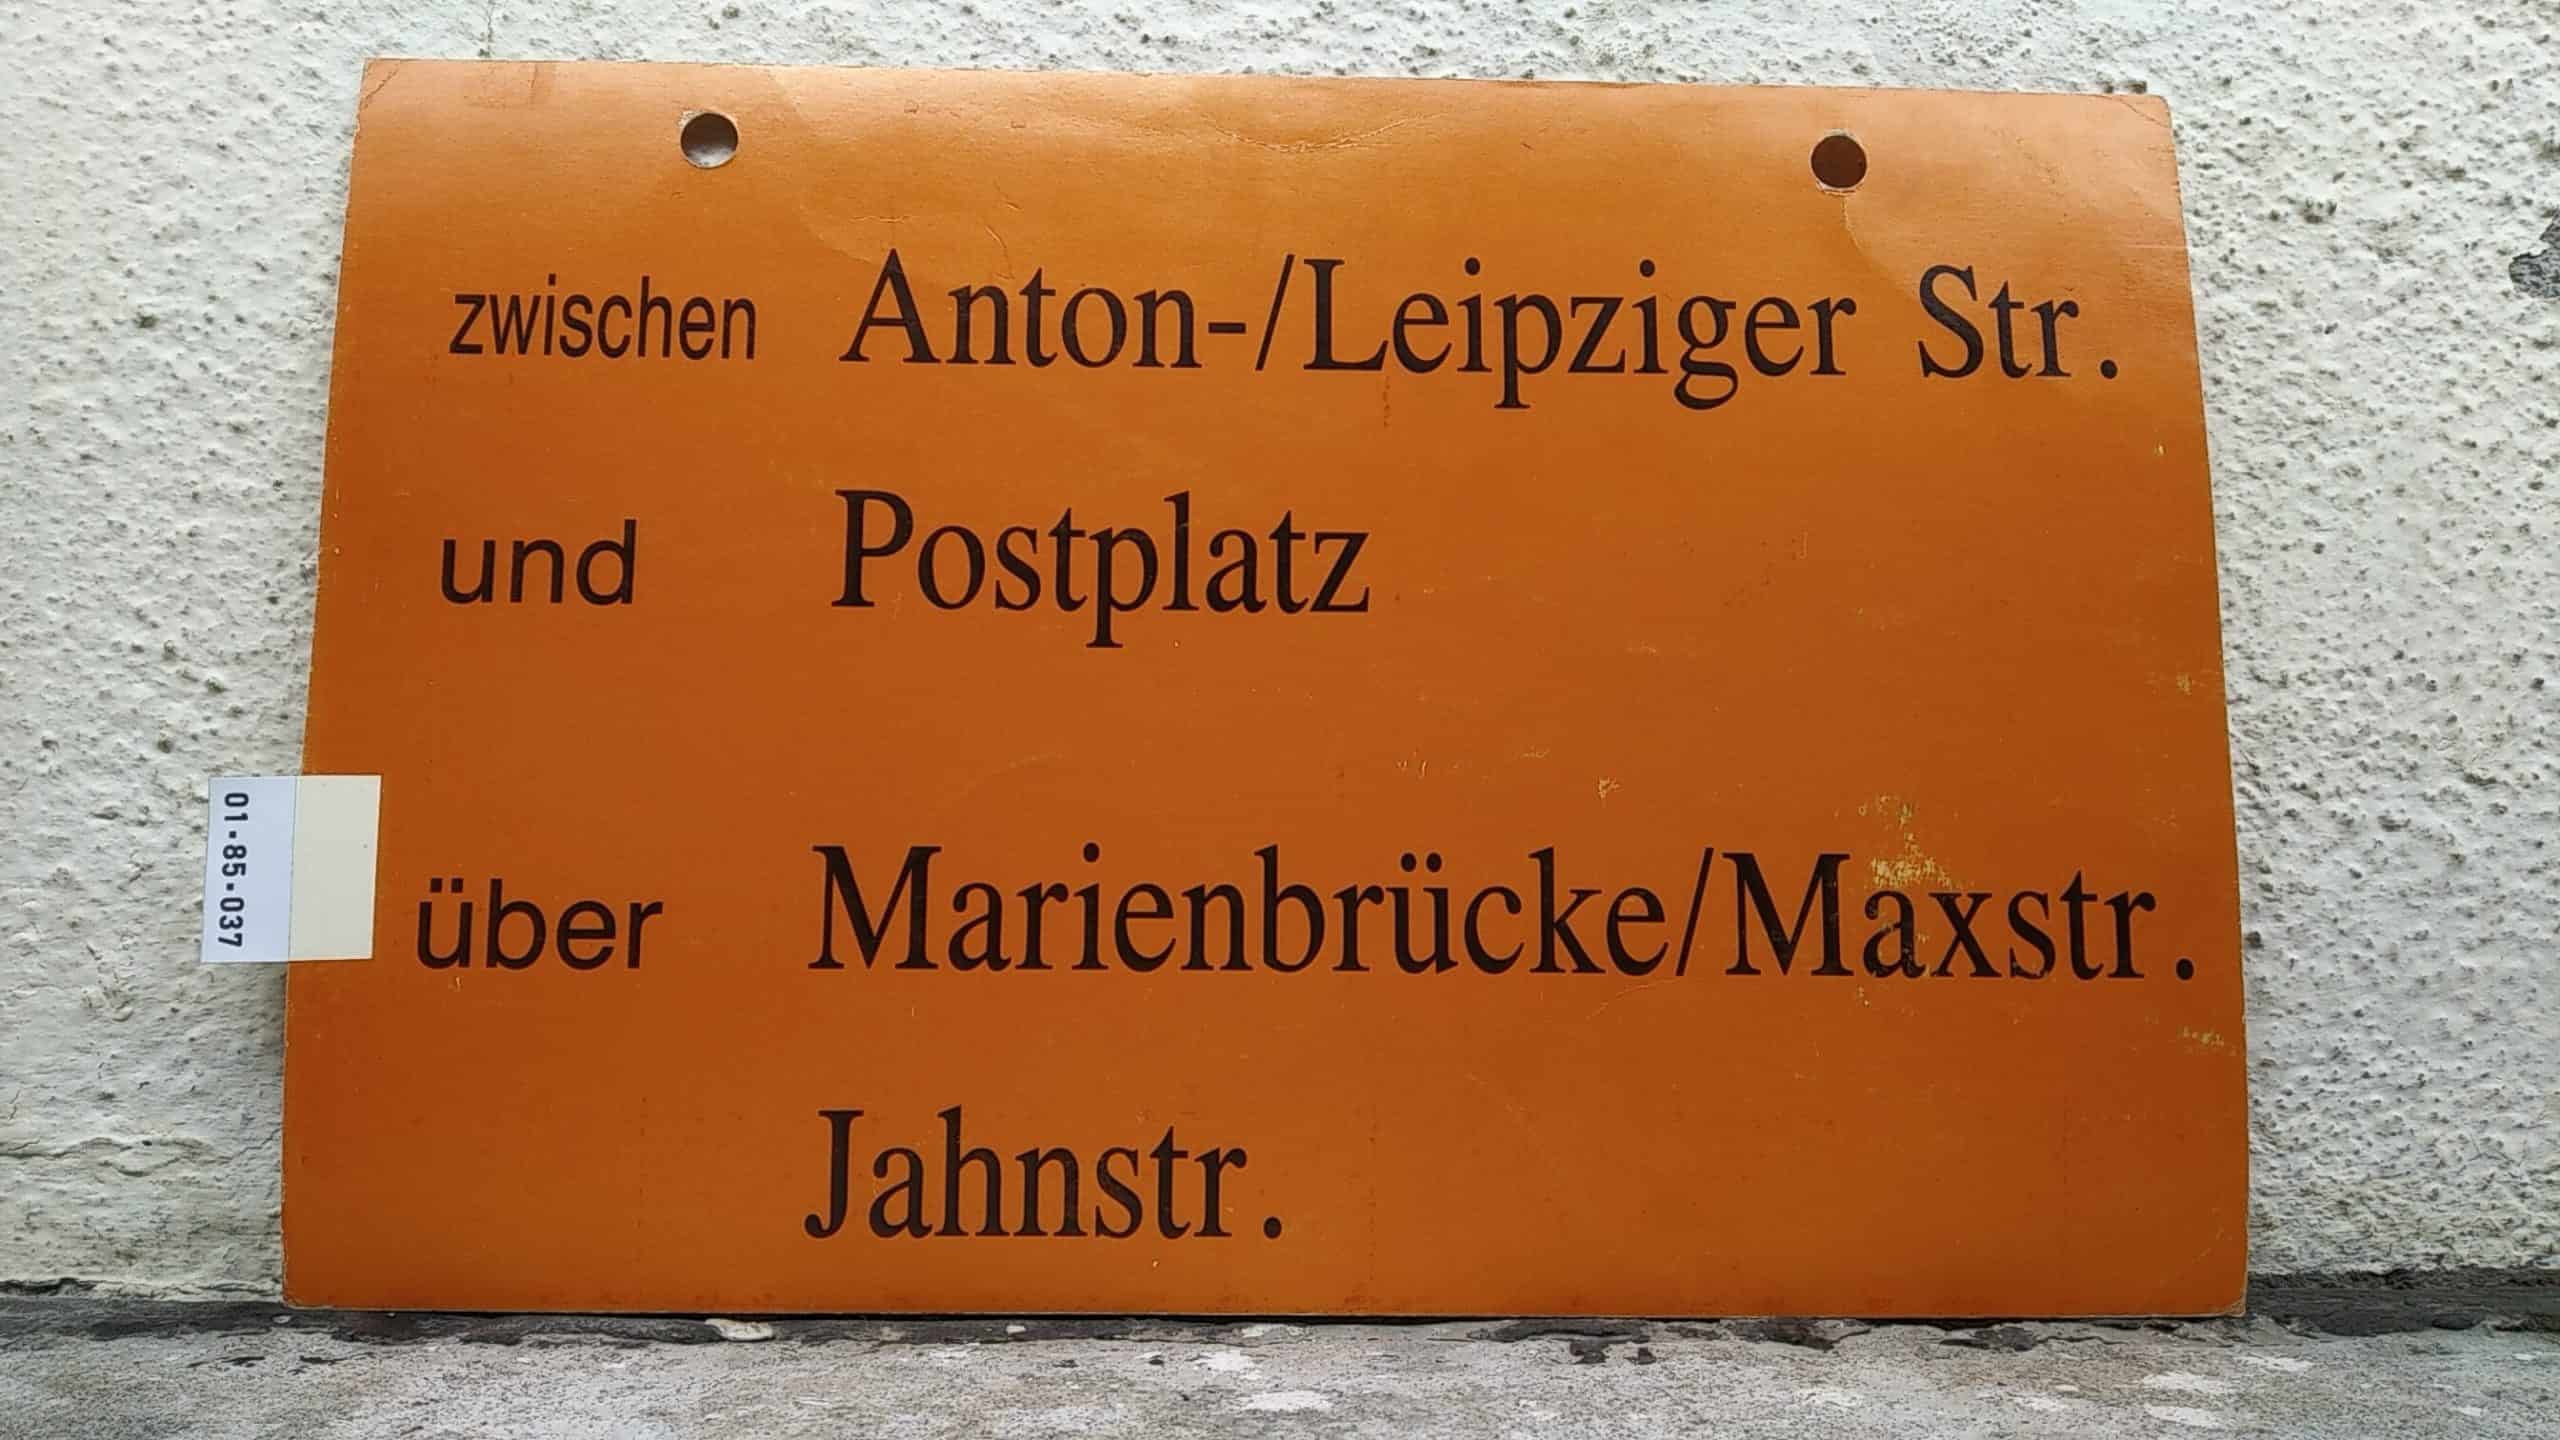 Ein seltenes Straßenbahn-Umleitungsschild aus Dresden: zwischen Anton-/Leipziger Str. und Postplatz über Marienbrücke/Maxstr. Jahnstr.